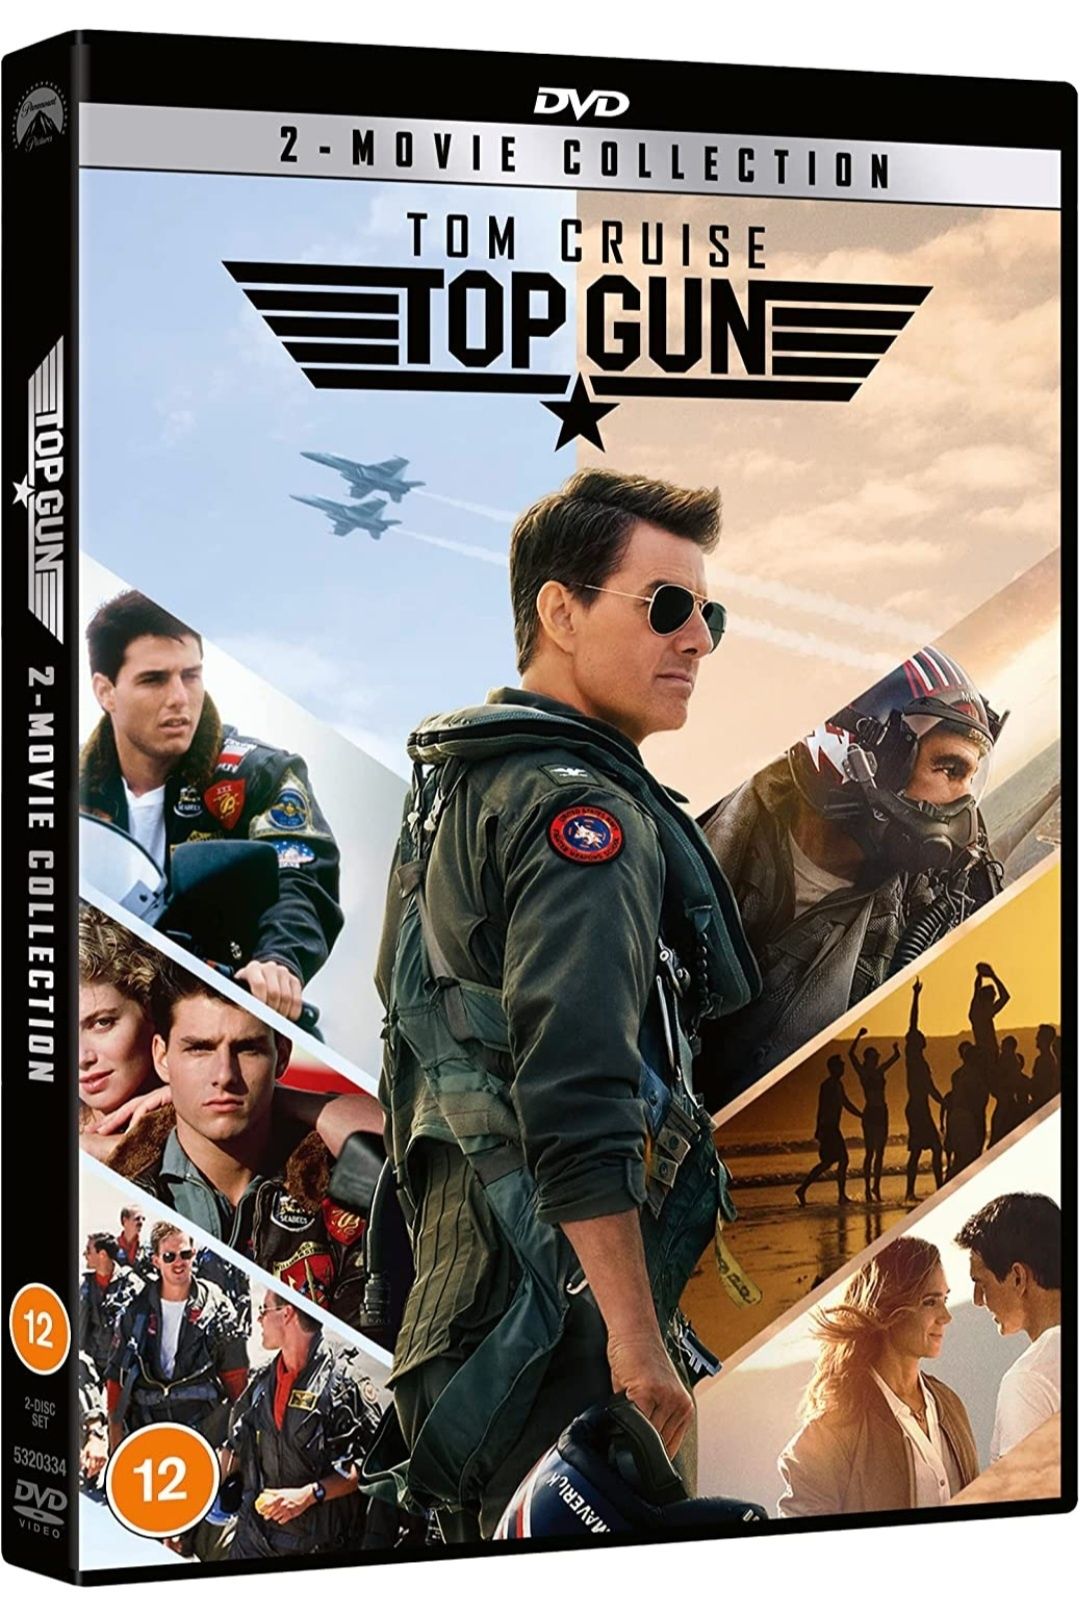 Filme Top Gun DVD BoxSet  Complete Collection 1-2